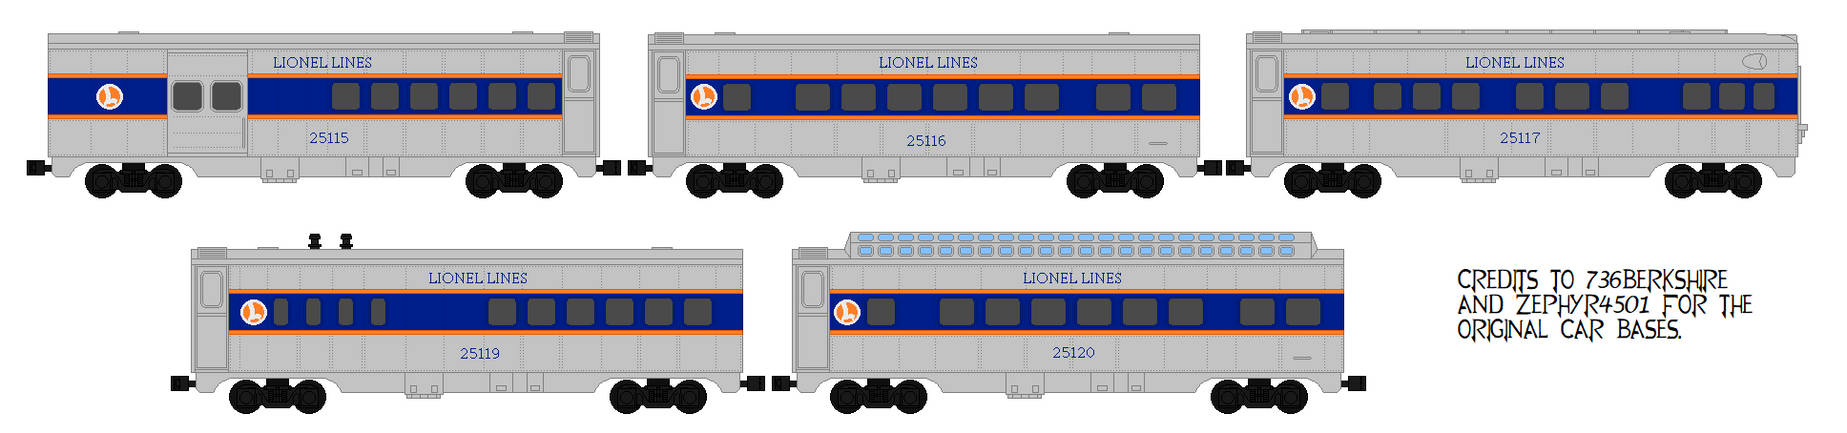 Lionel Lines 027 Passenger Cars